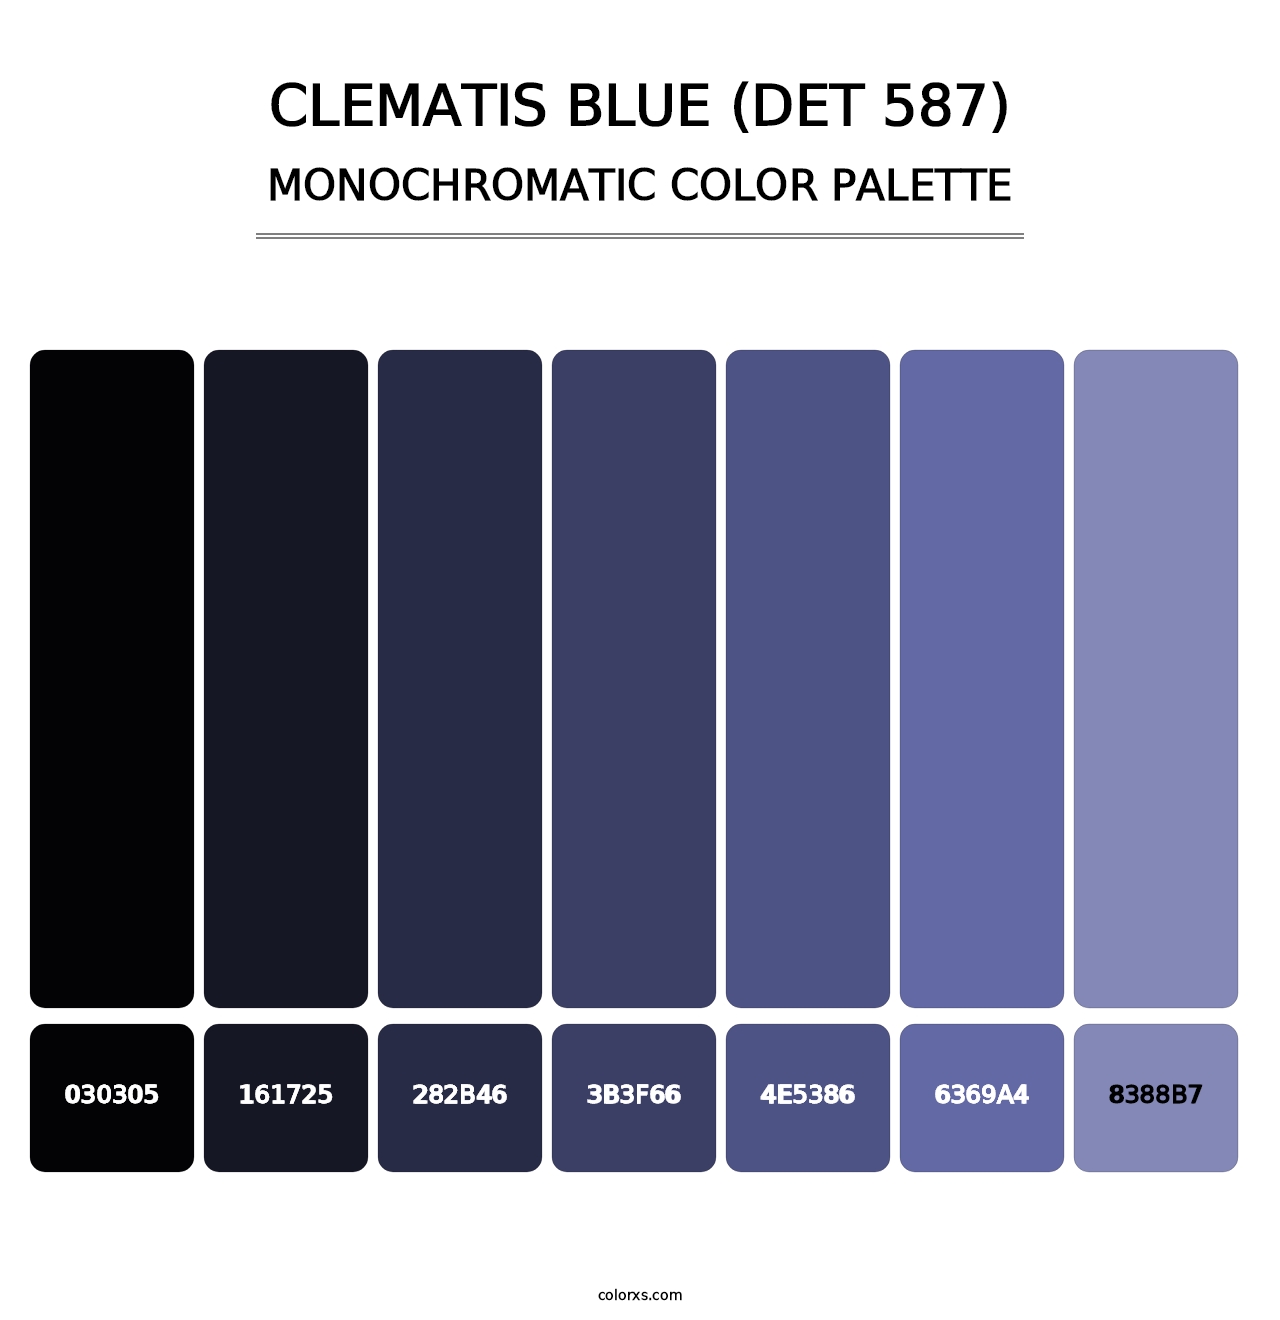 Clematis Blue (DET 587) - Monochromatic Color Palette